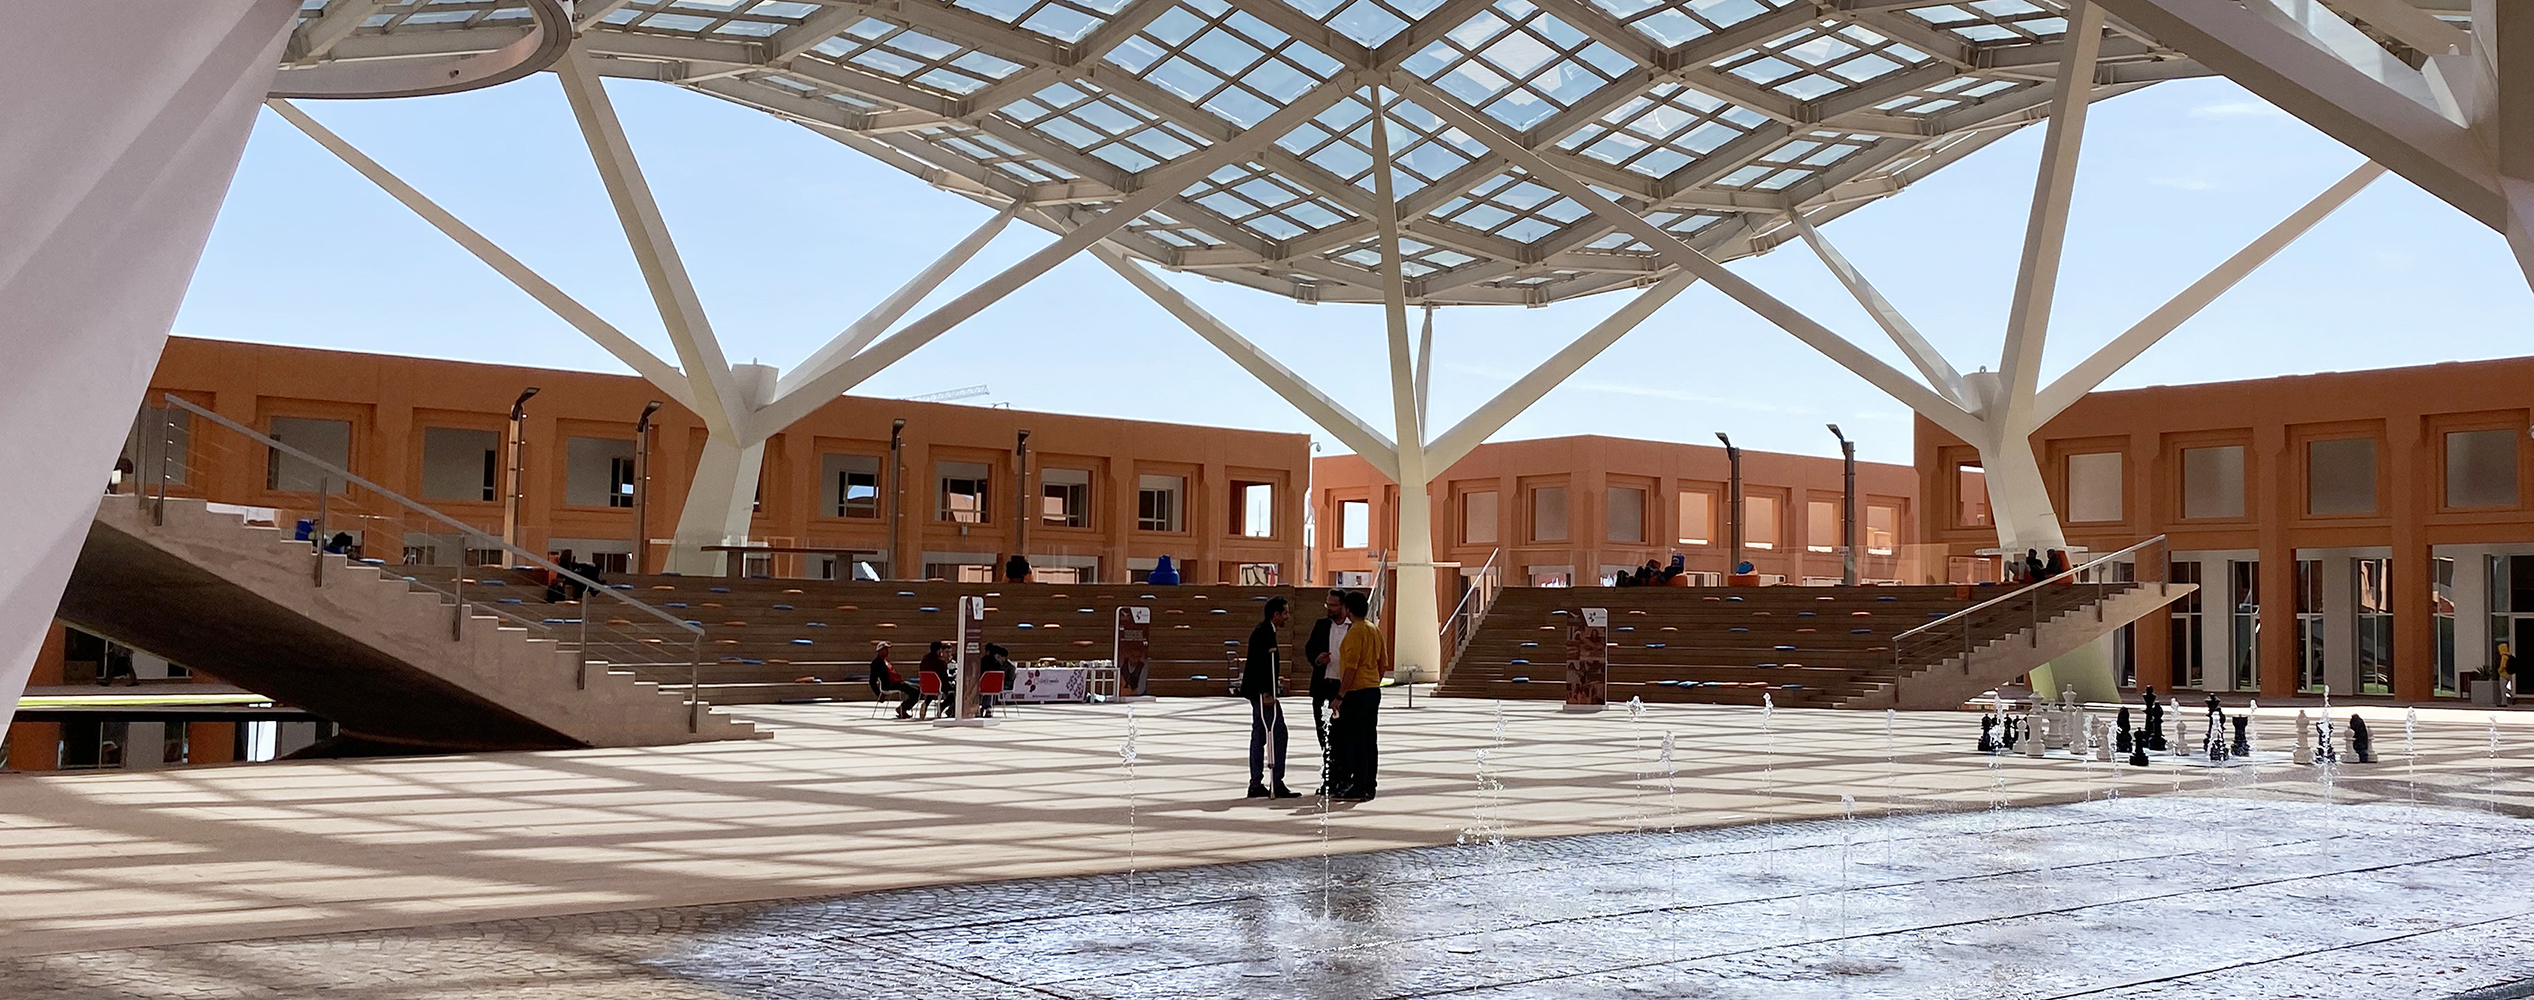 Amphitheater and Public Square – UM6P Ben Guerir